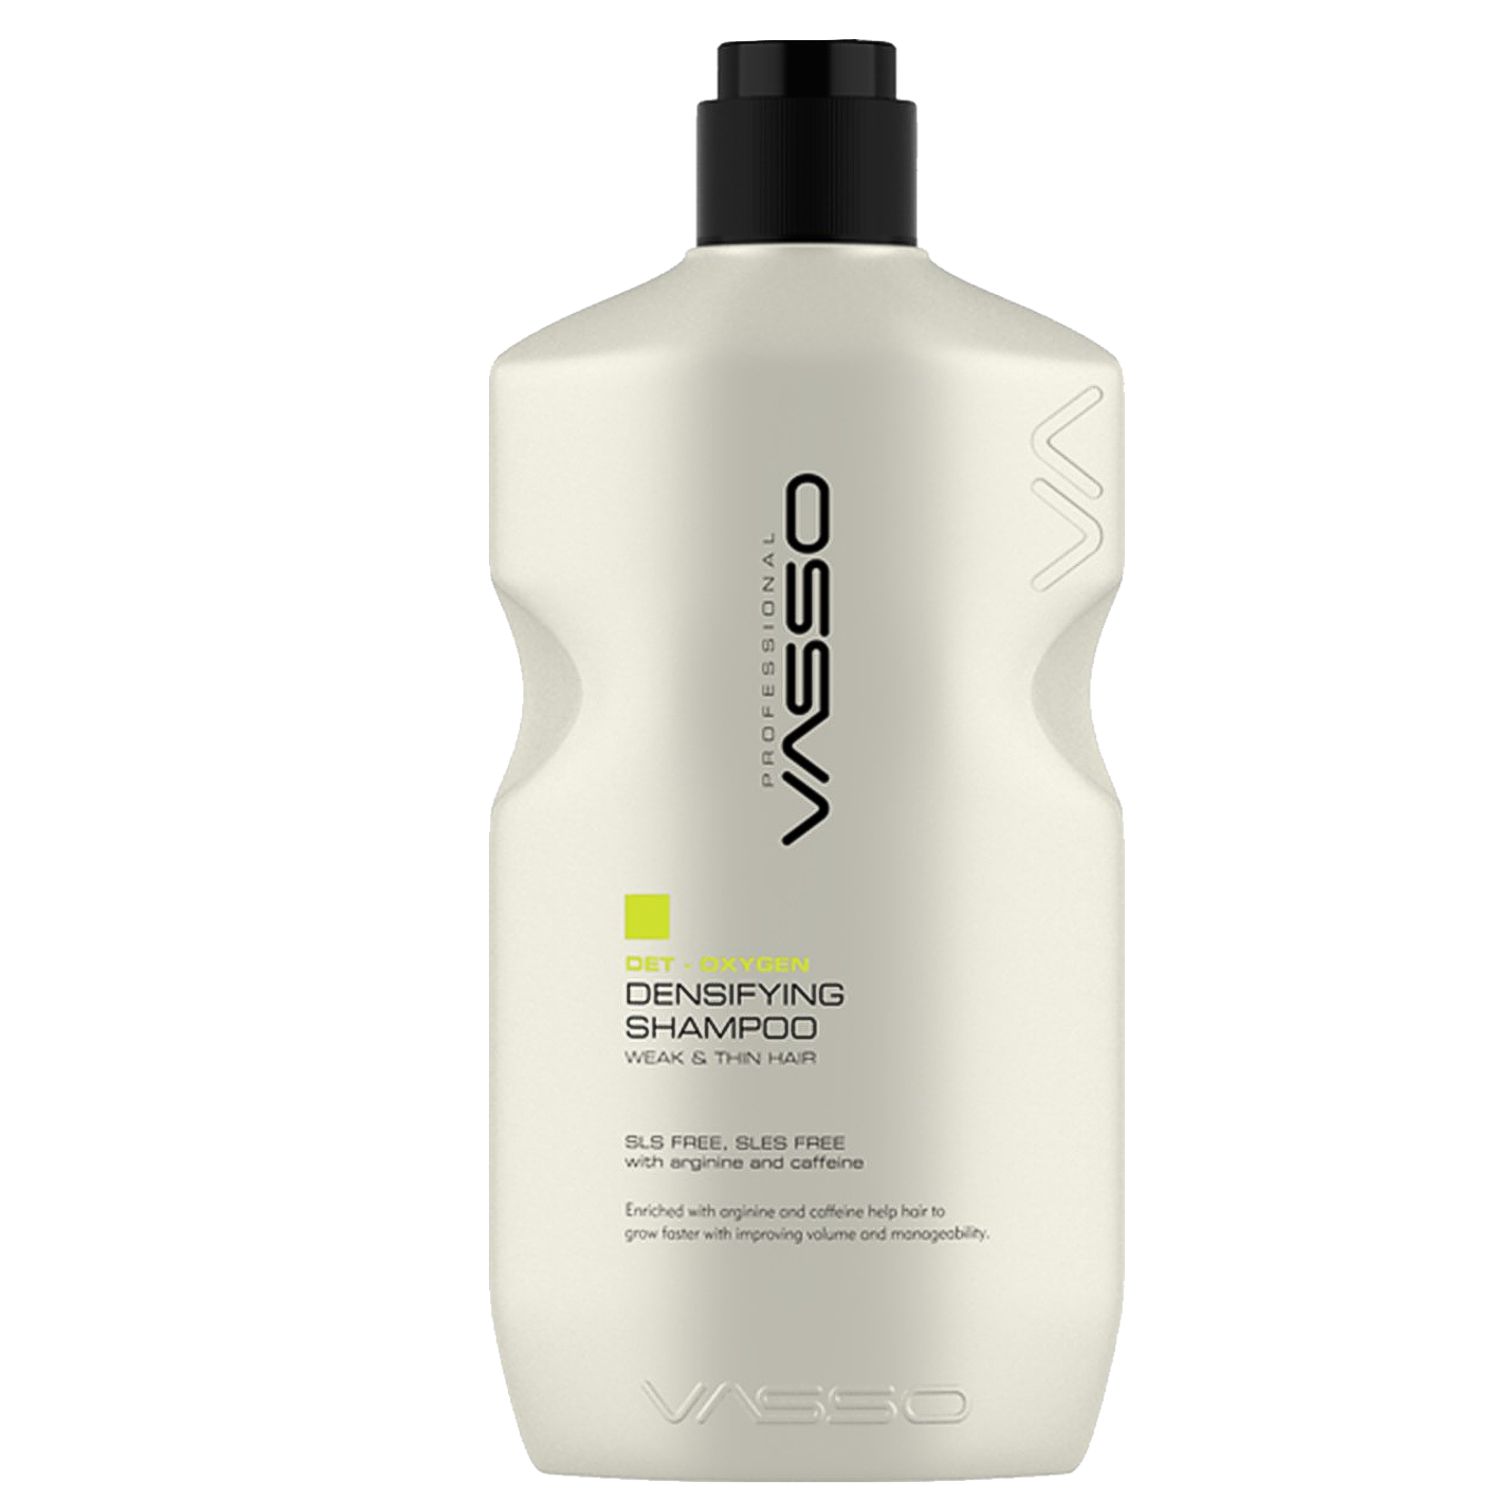 VASSO DET-OXYGEN Densifying Shampoo 1,5 L